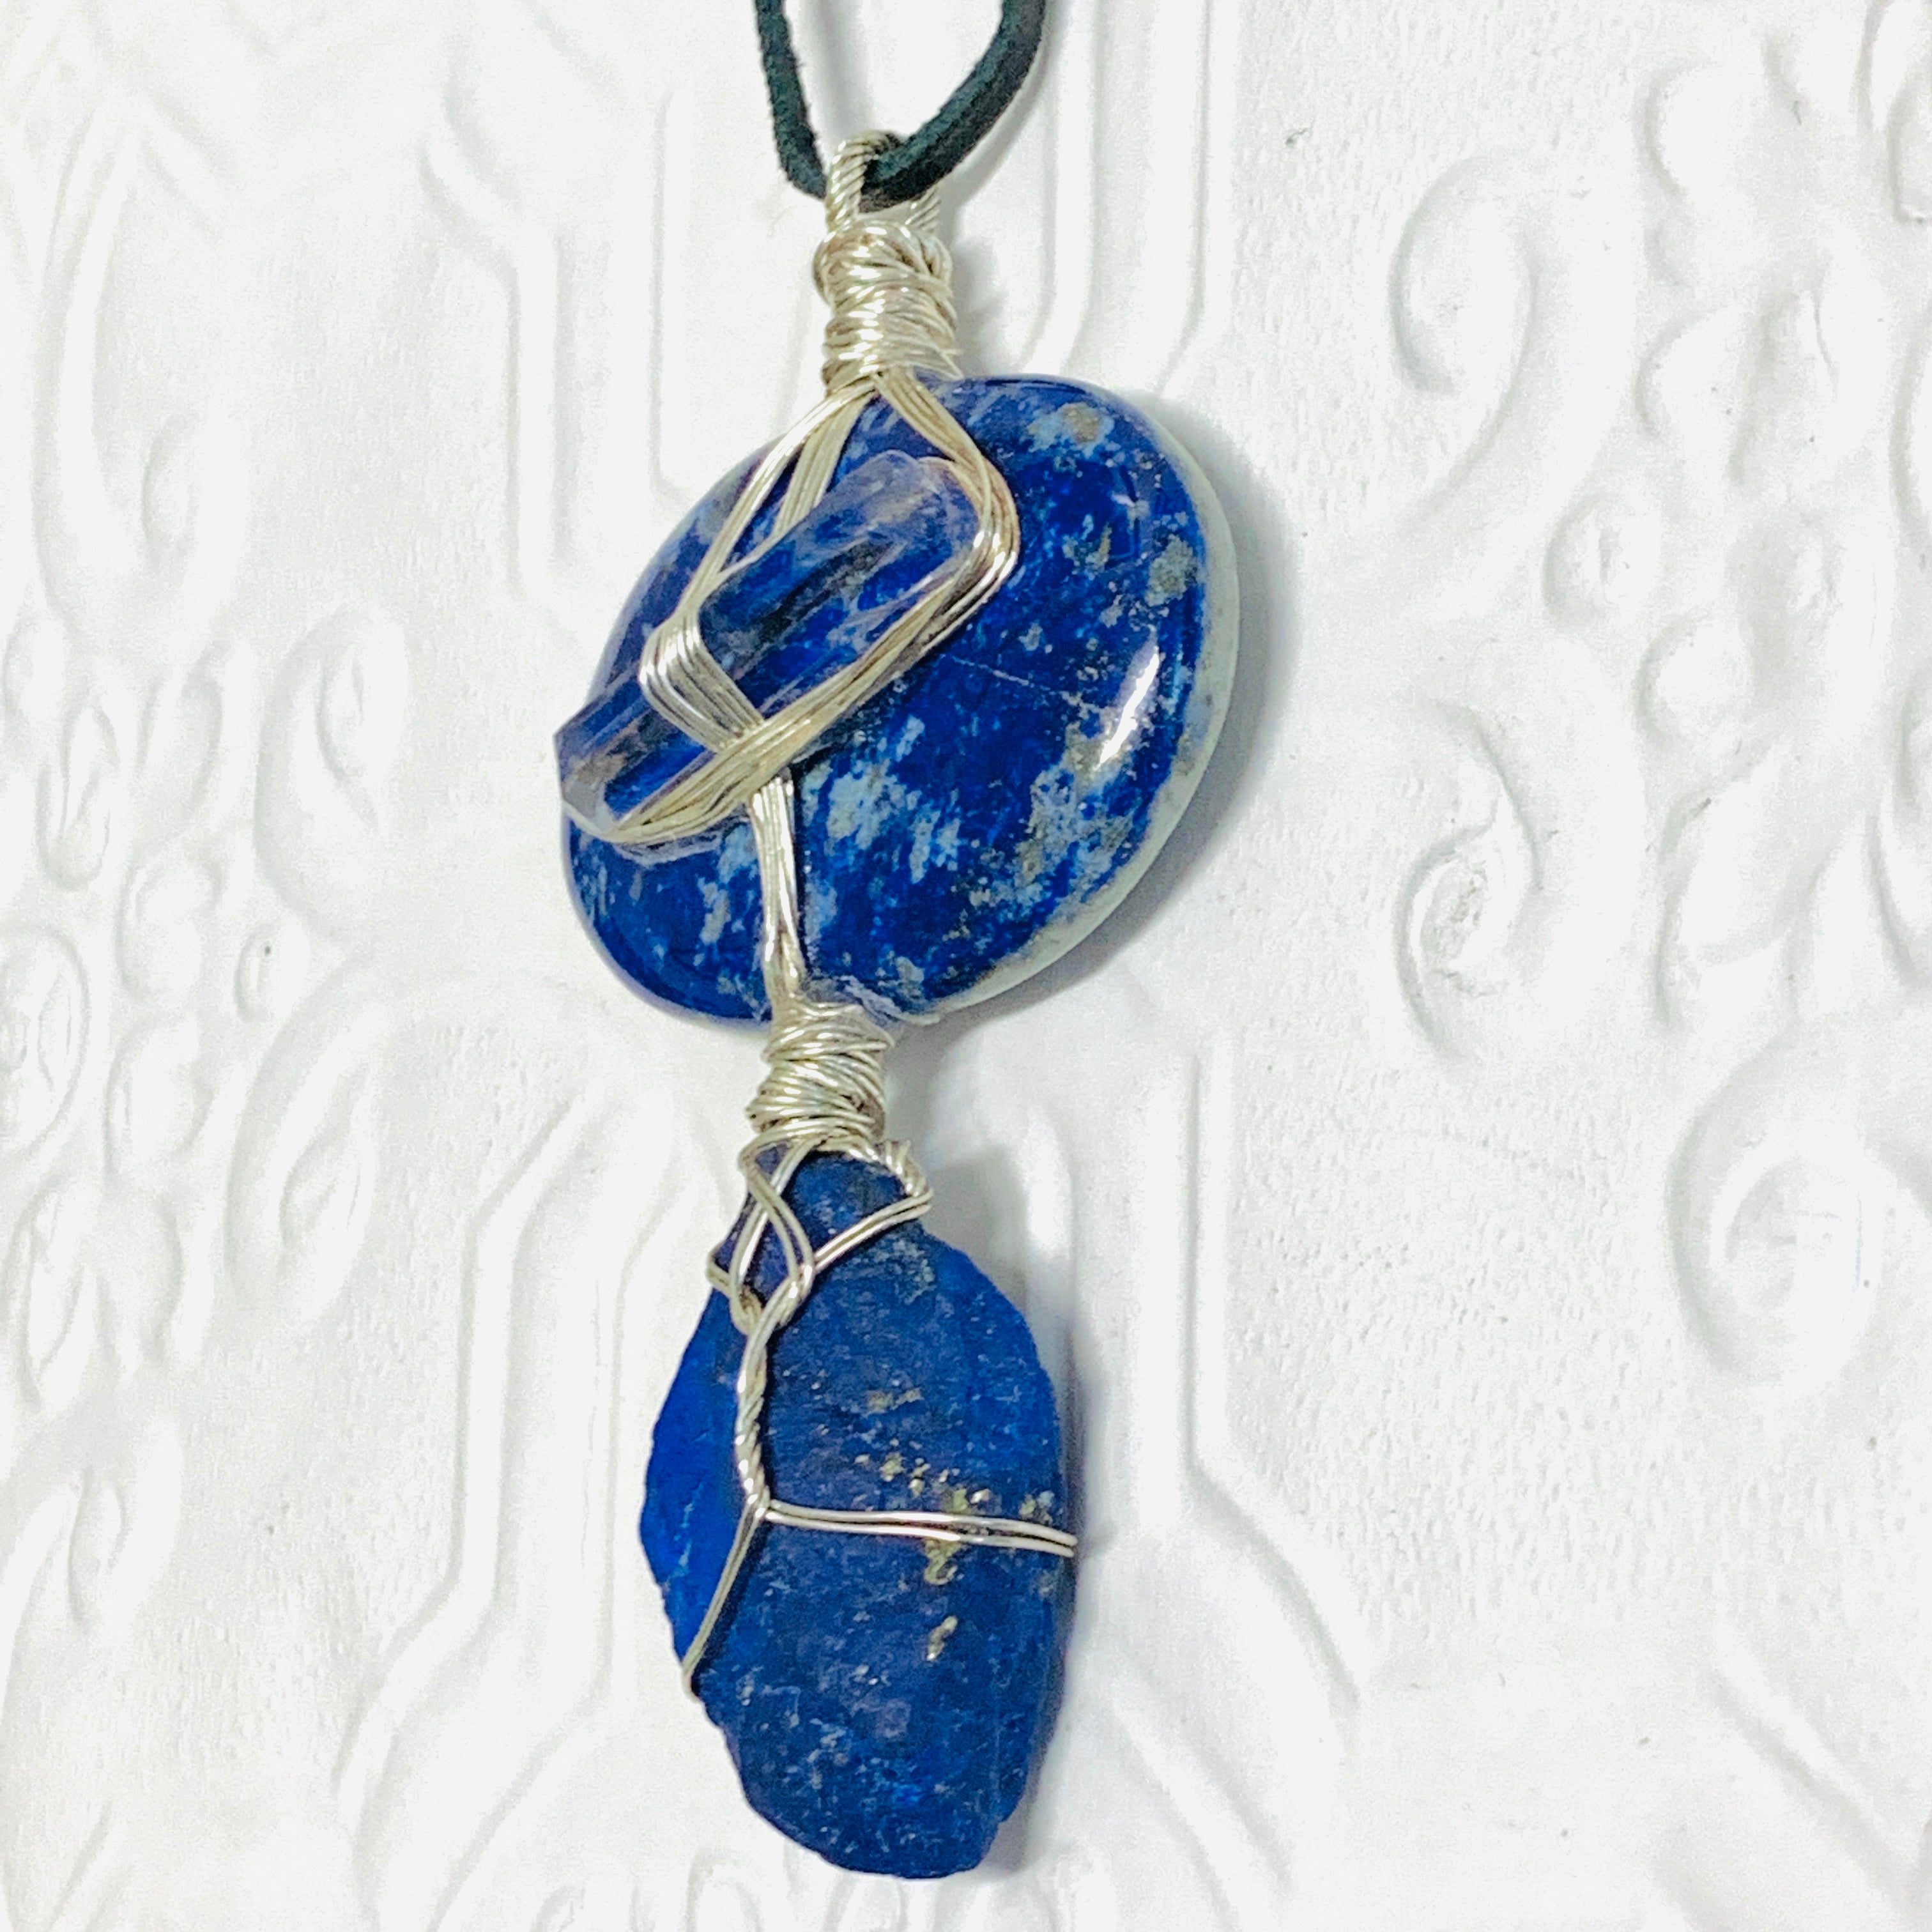 Lapis Lazuli and Quartz Necklace.